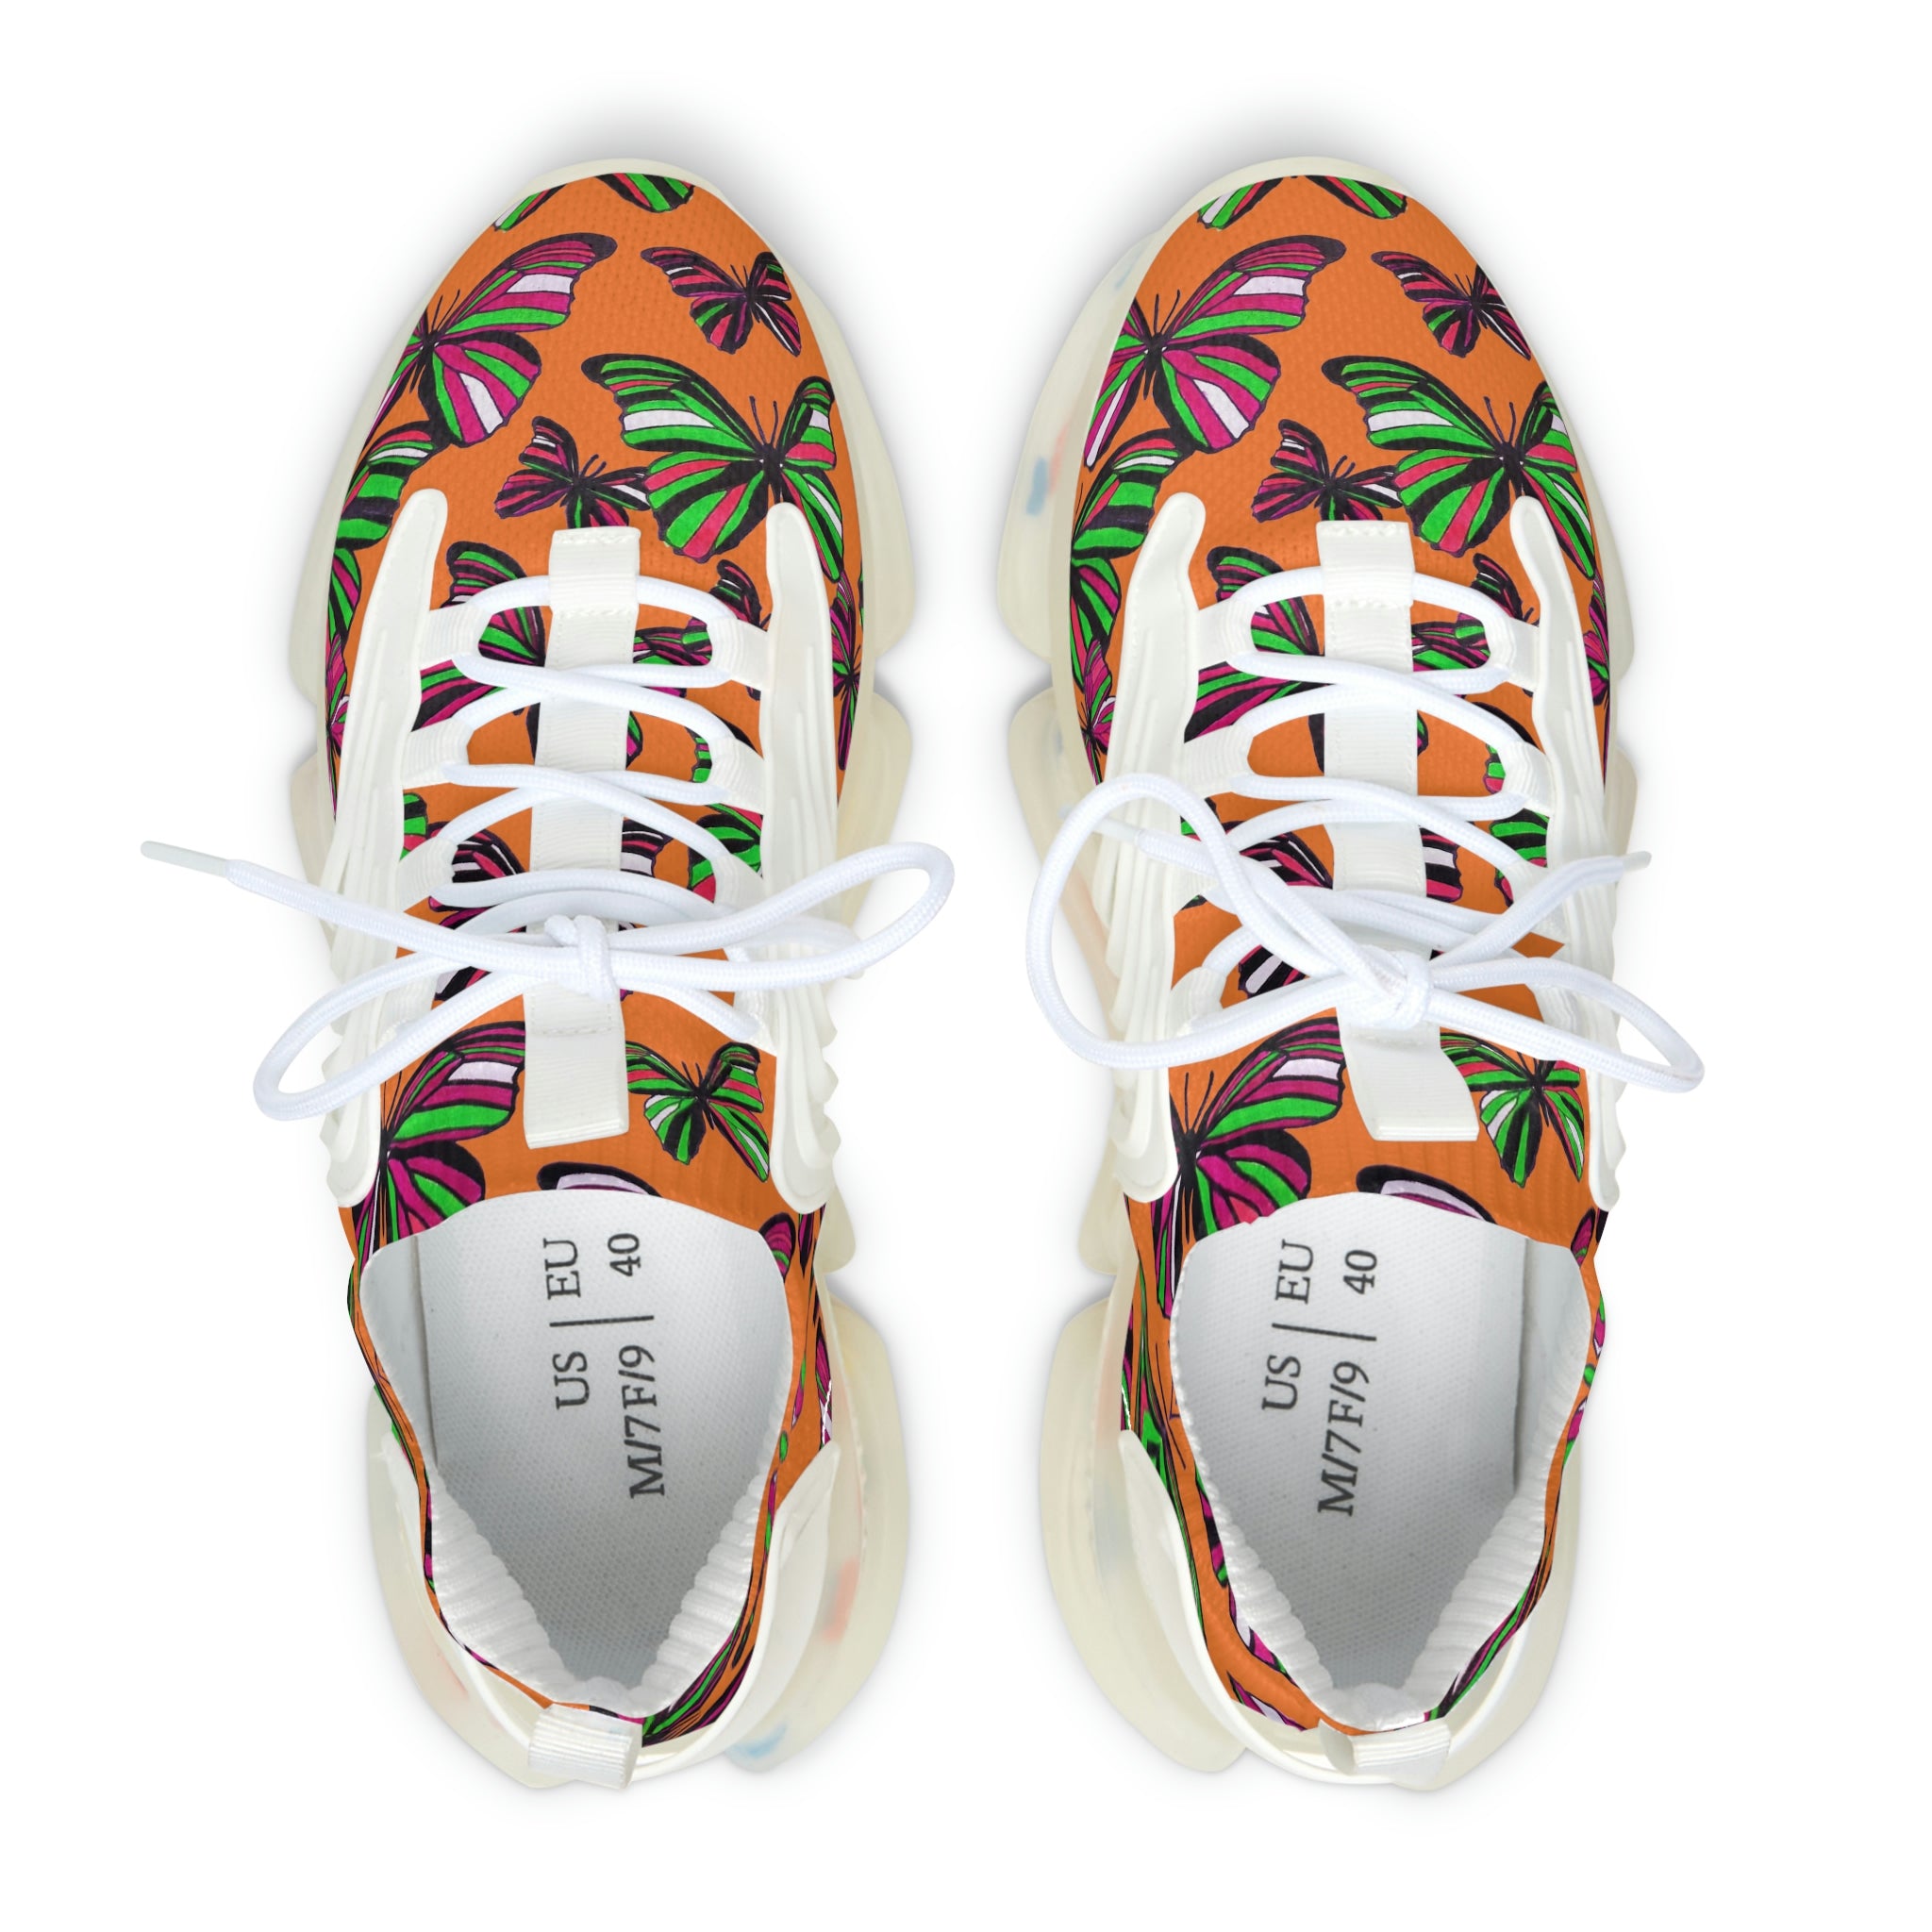 Peach Butterfly Printed OTT Women's Mesh Knit Sneakers